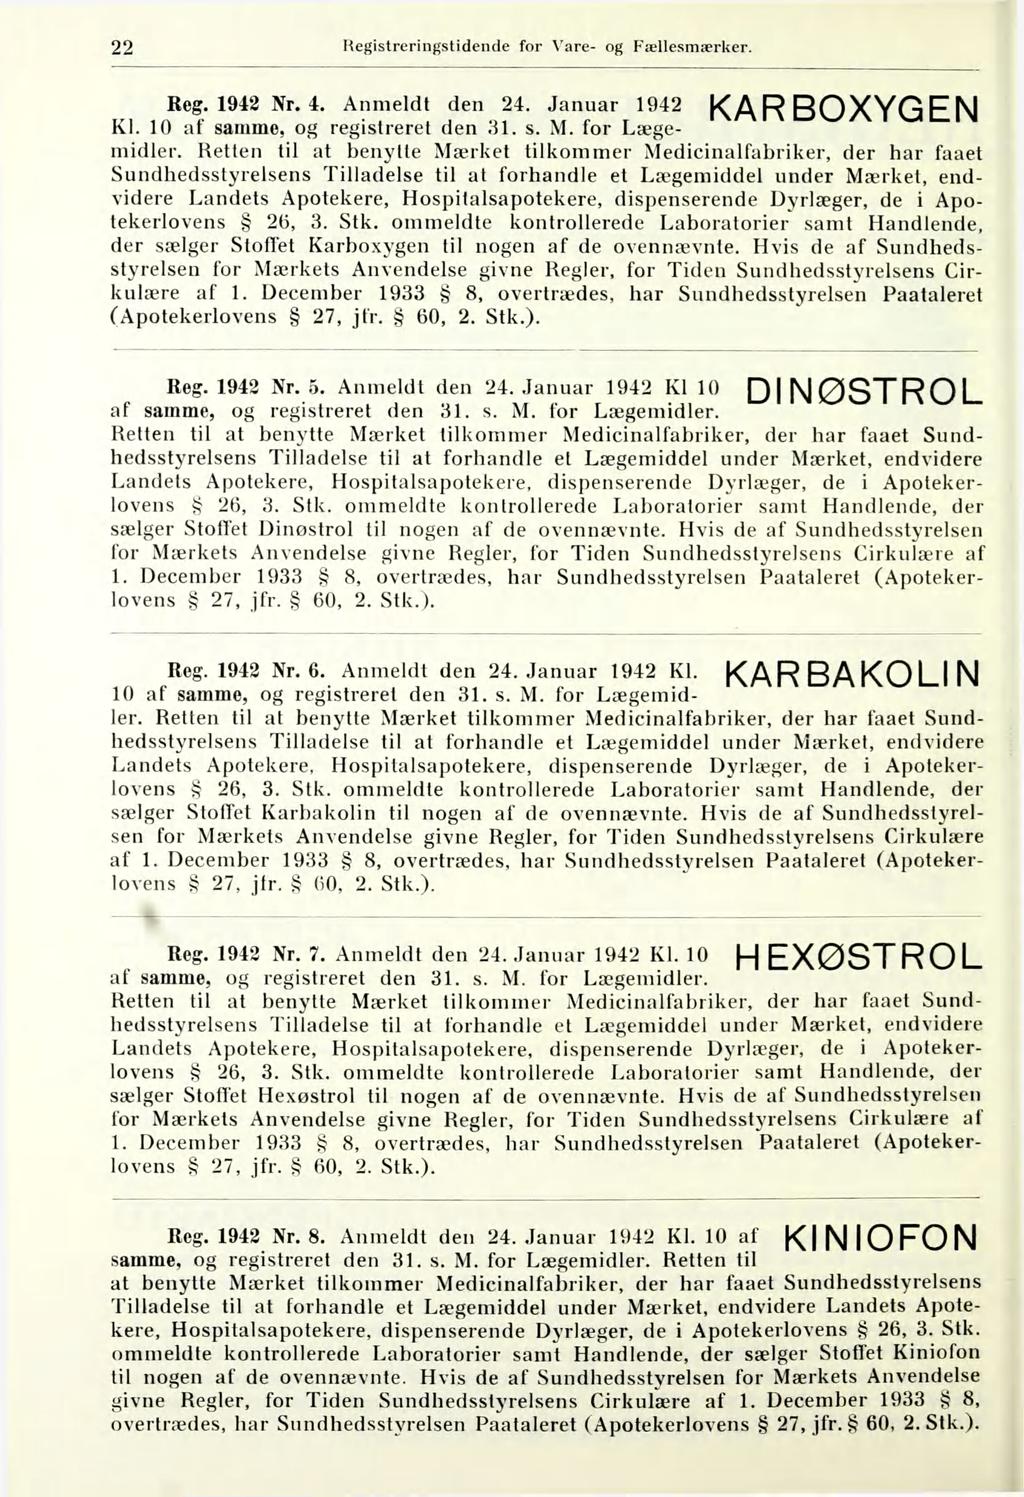 22 Hegistreringstidende for Vare- og Fællesmærker. KARBOXYGEN Reg. 1942 Nr. 4. Anmeldt den 24. Januar 1942 Kl. 10 af samme, og registreret den 81. s. M. for Lægemidler.